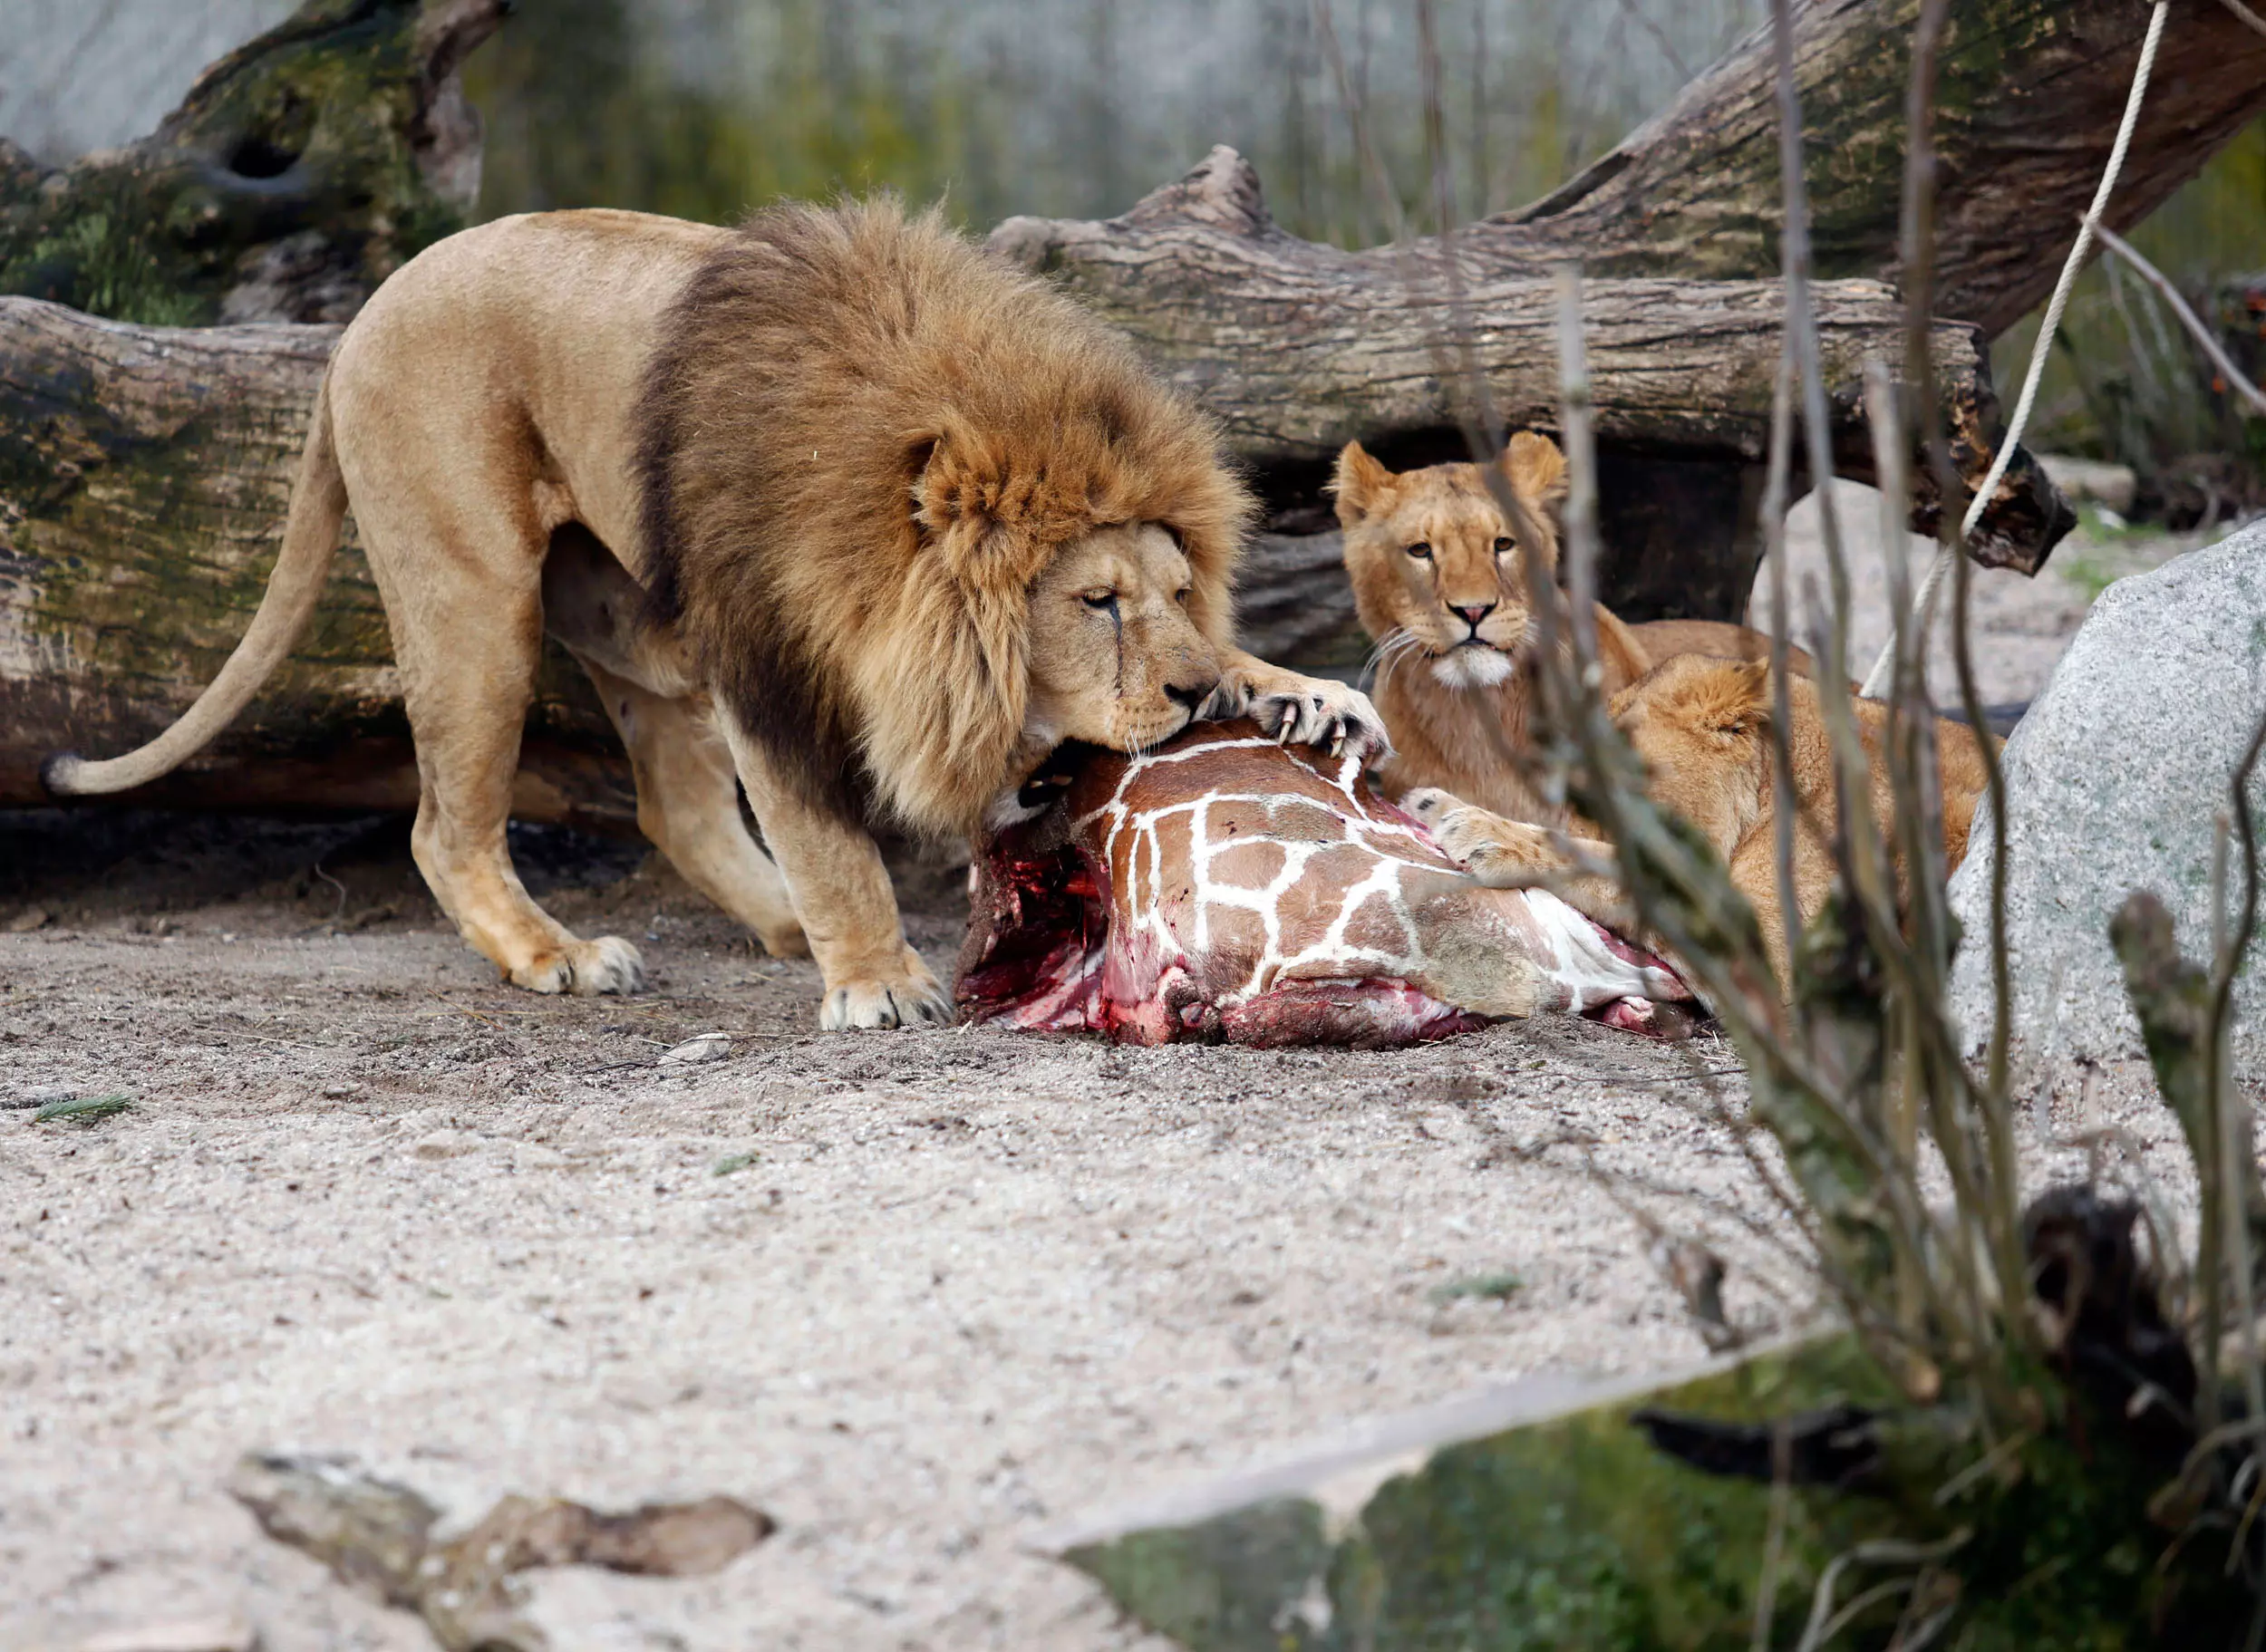 האריות של גן החיות בקופנהגן אוכלים את הנתח המבותר של הג'ירף שהומת. אילו רק ידעו שלבסוף יזכו לגורל דומה